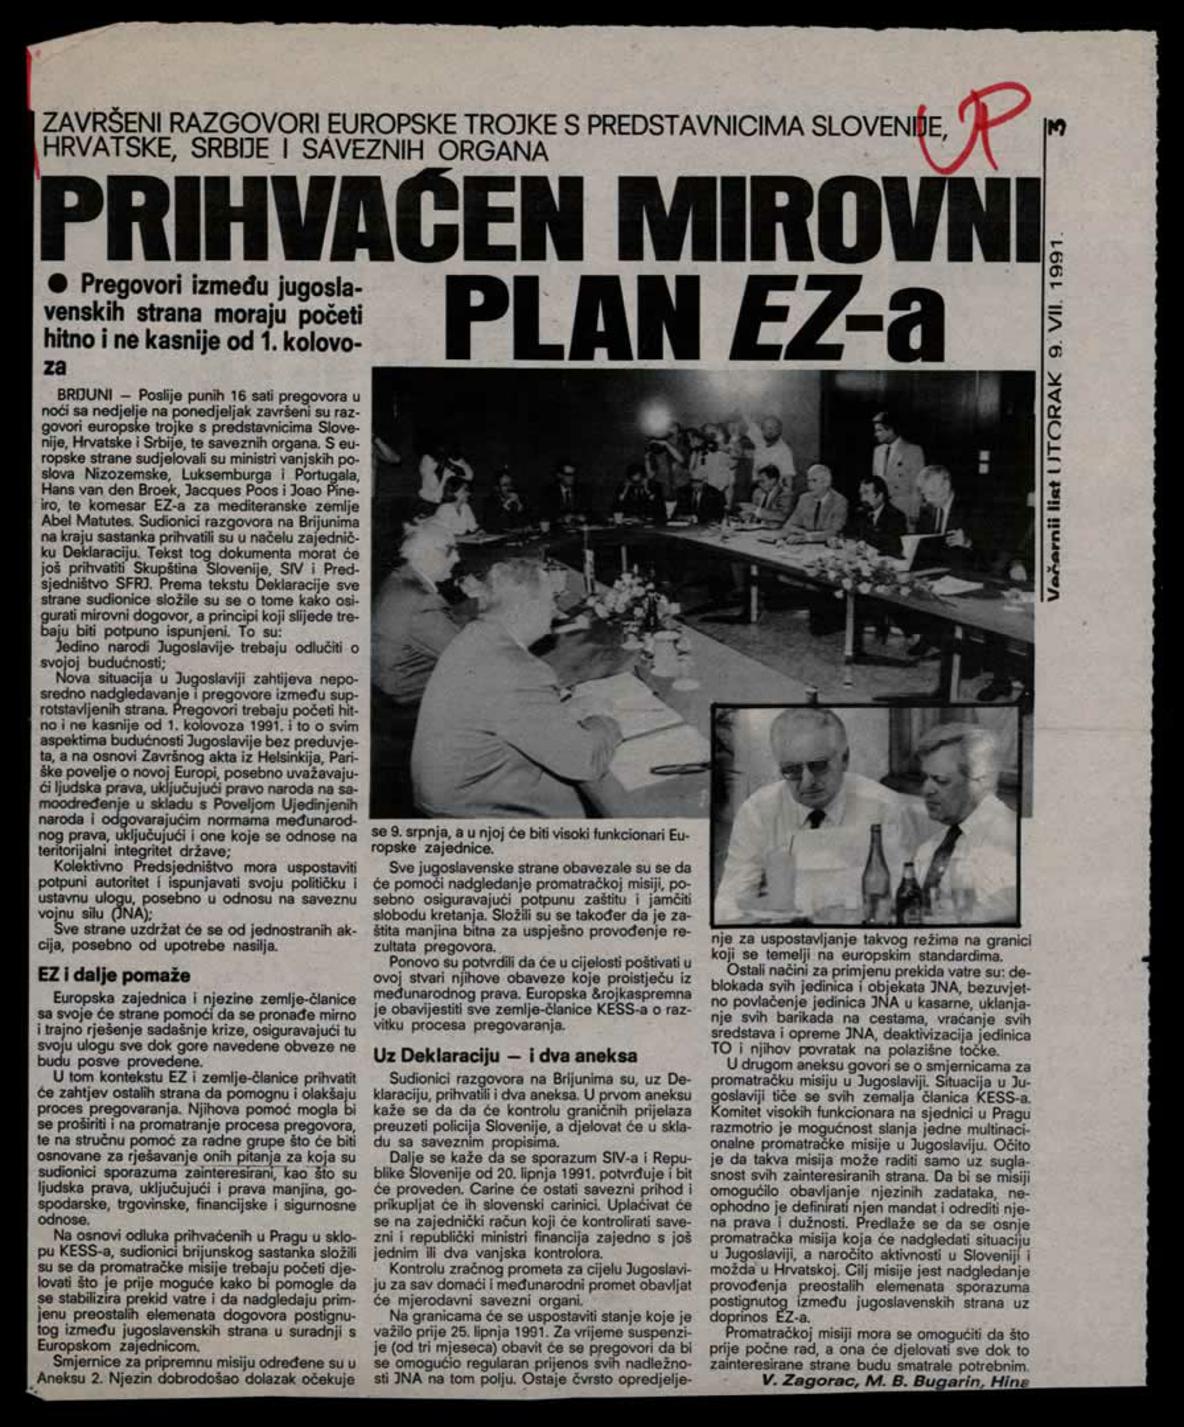 <b>Prihvaćen mirovni plan Europske zajednice</b>, članak iz <i>Večernjeg lista</i>, 9. srpnja 1991.<br><br>
HR-HDA-2031. Vjesnik. Hrvatska, kut. 1285
